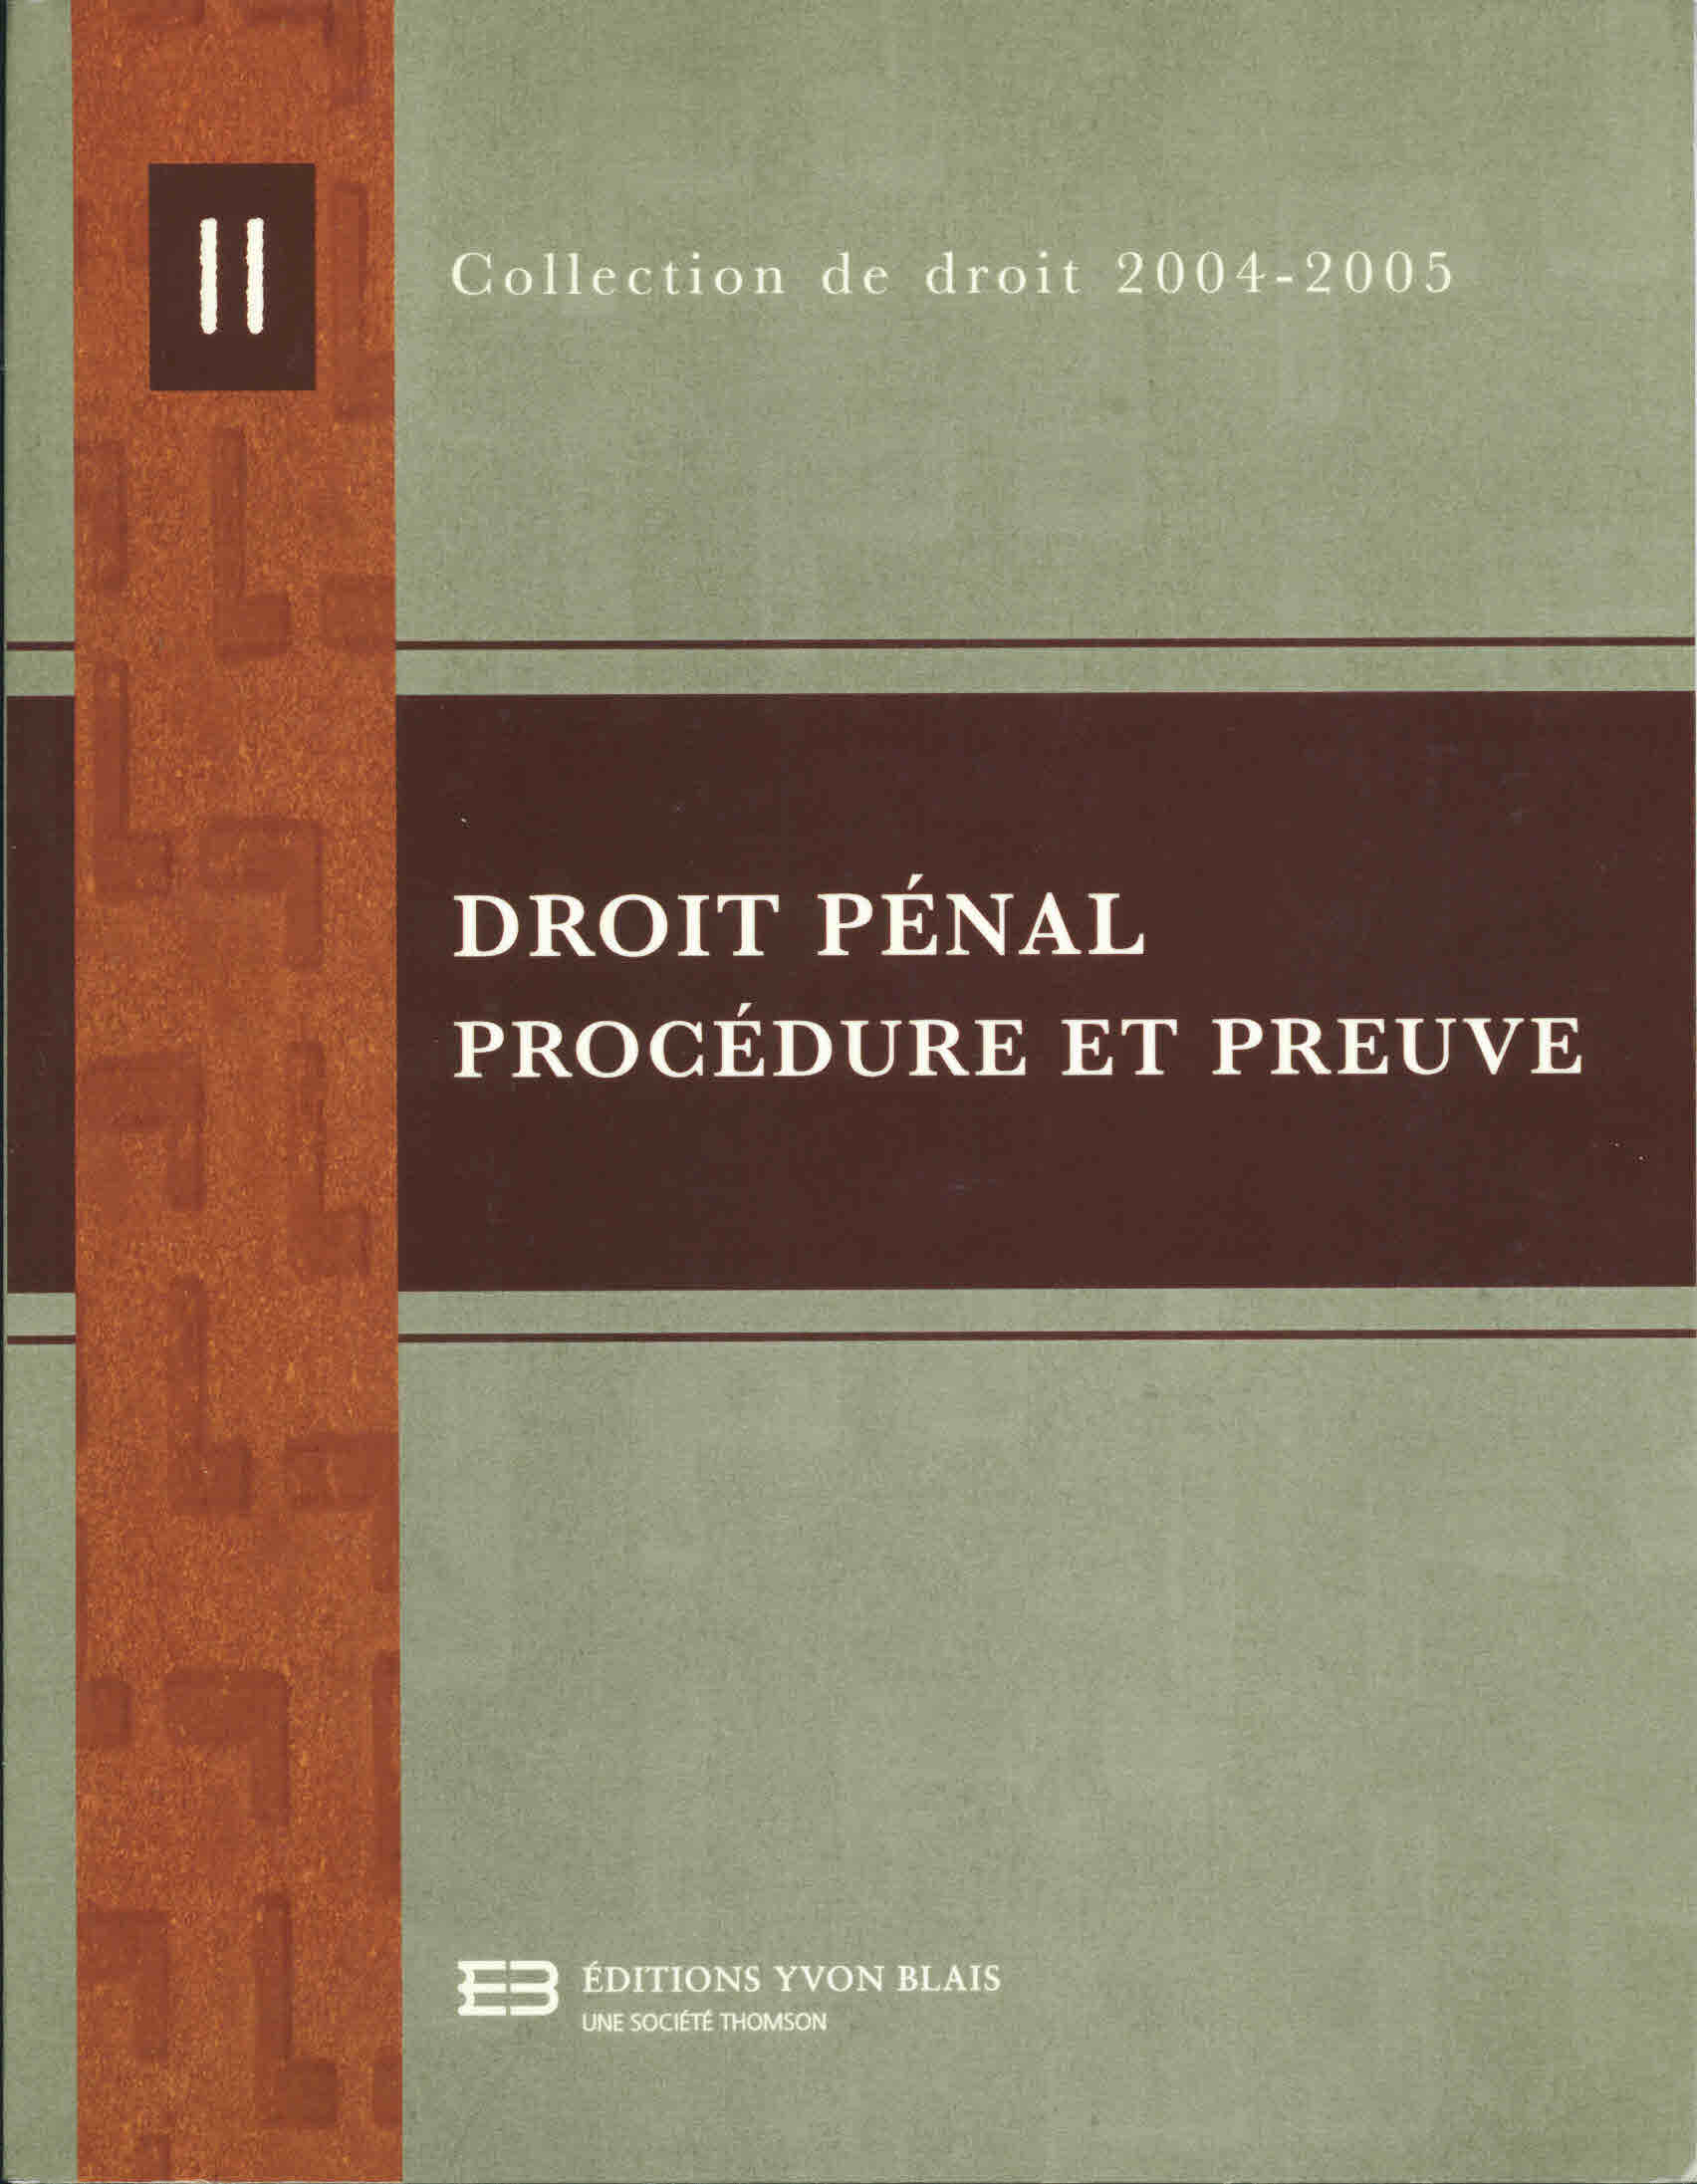 Droit penal procedure et preuve